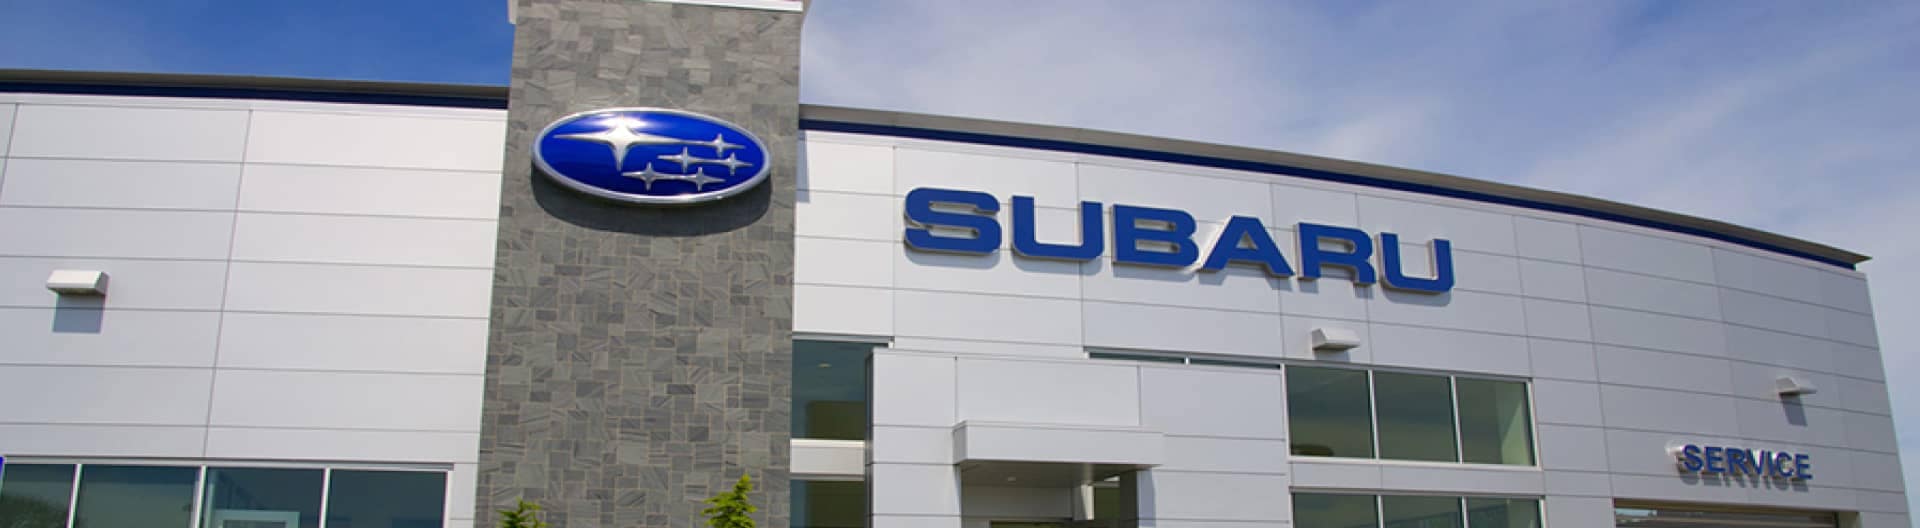 Subaru dealership